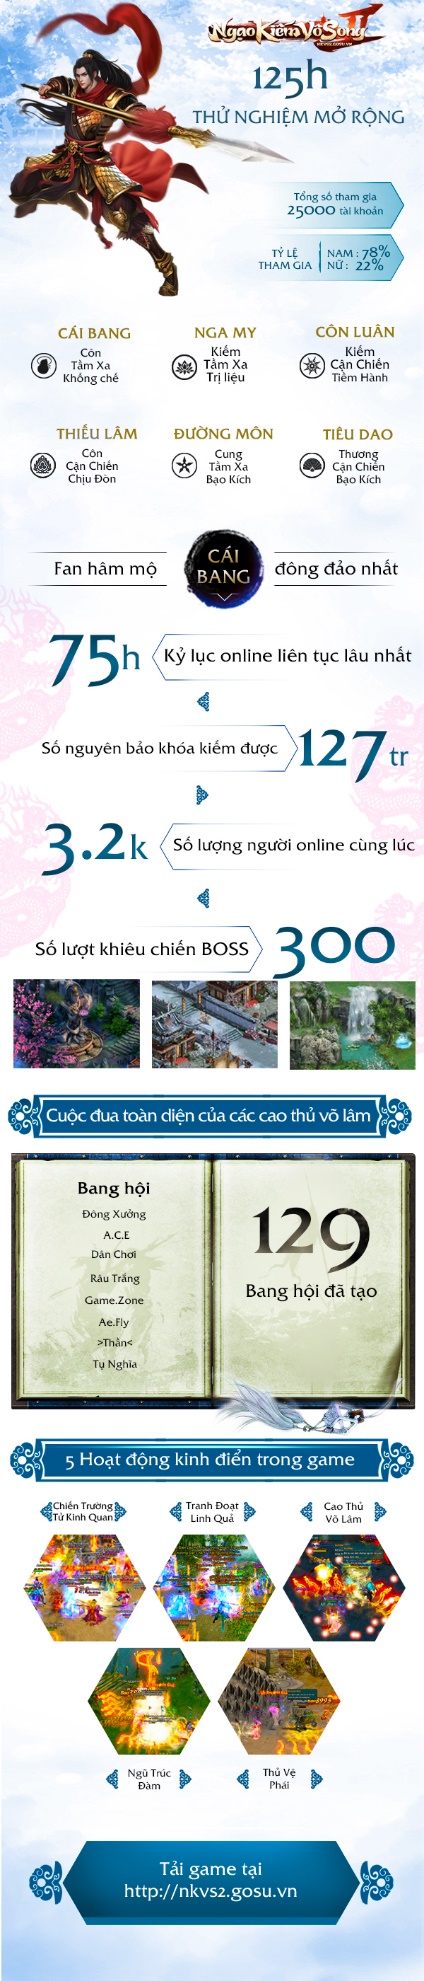 Ngạo Kiếm Vô Song 2 ra mắt trang chủ, mở cửa chính thức trong tháng 10 tại Việt Nam